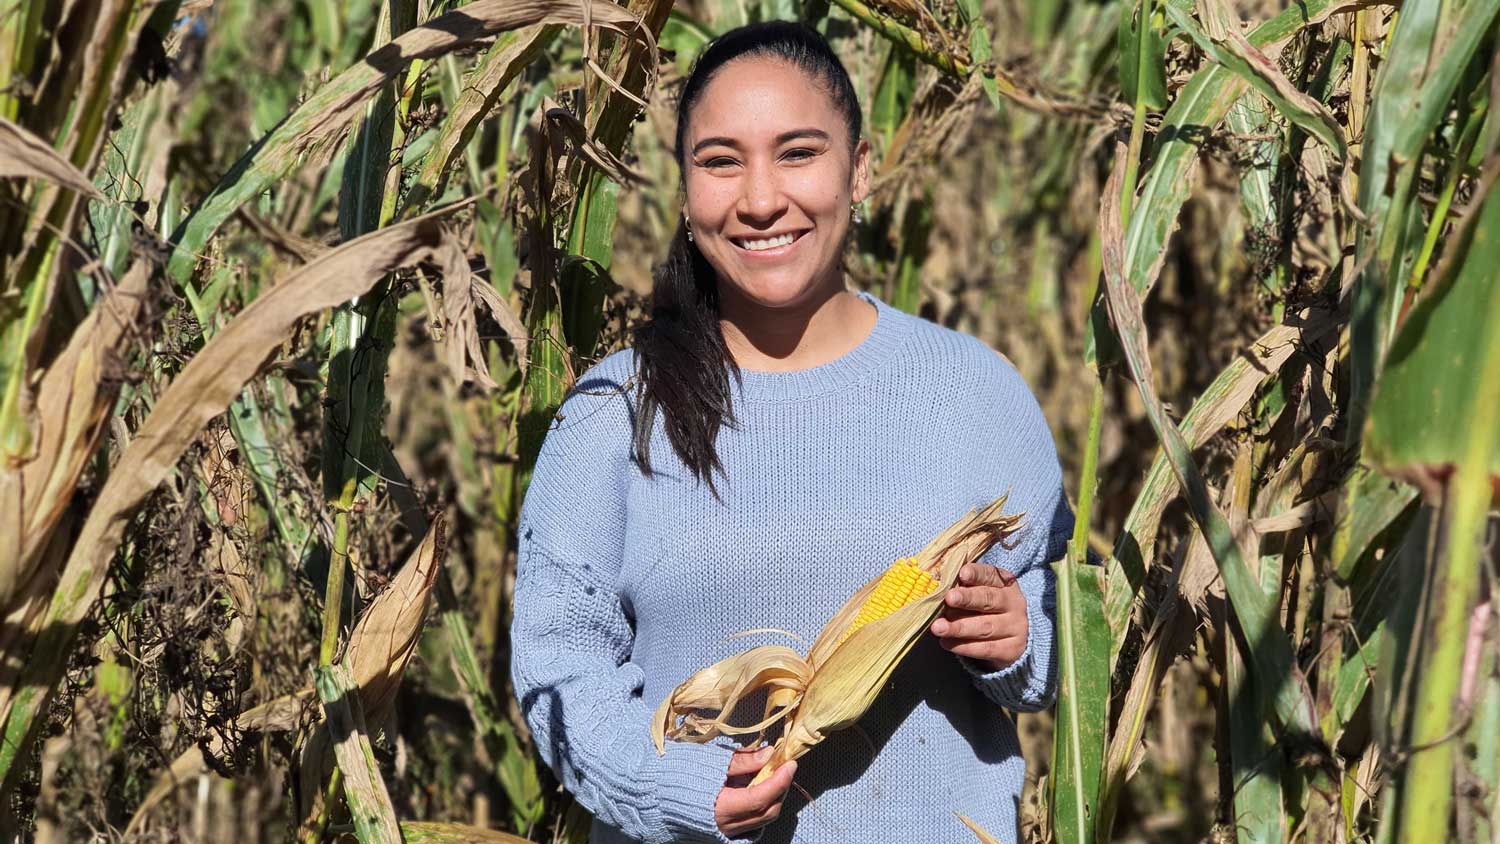 Daniela Jones in cornfield holding an ear of corn.